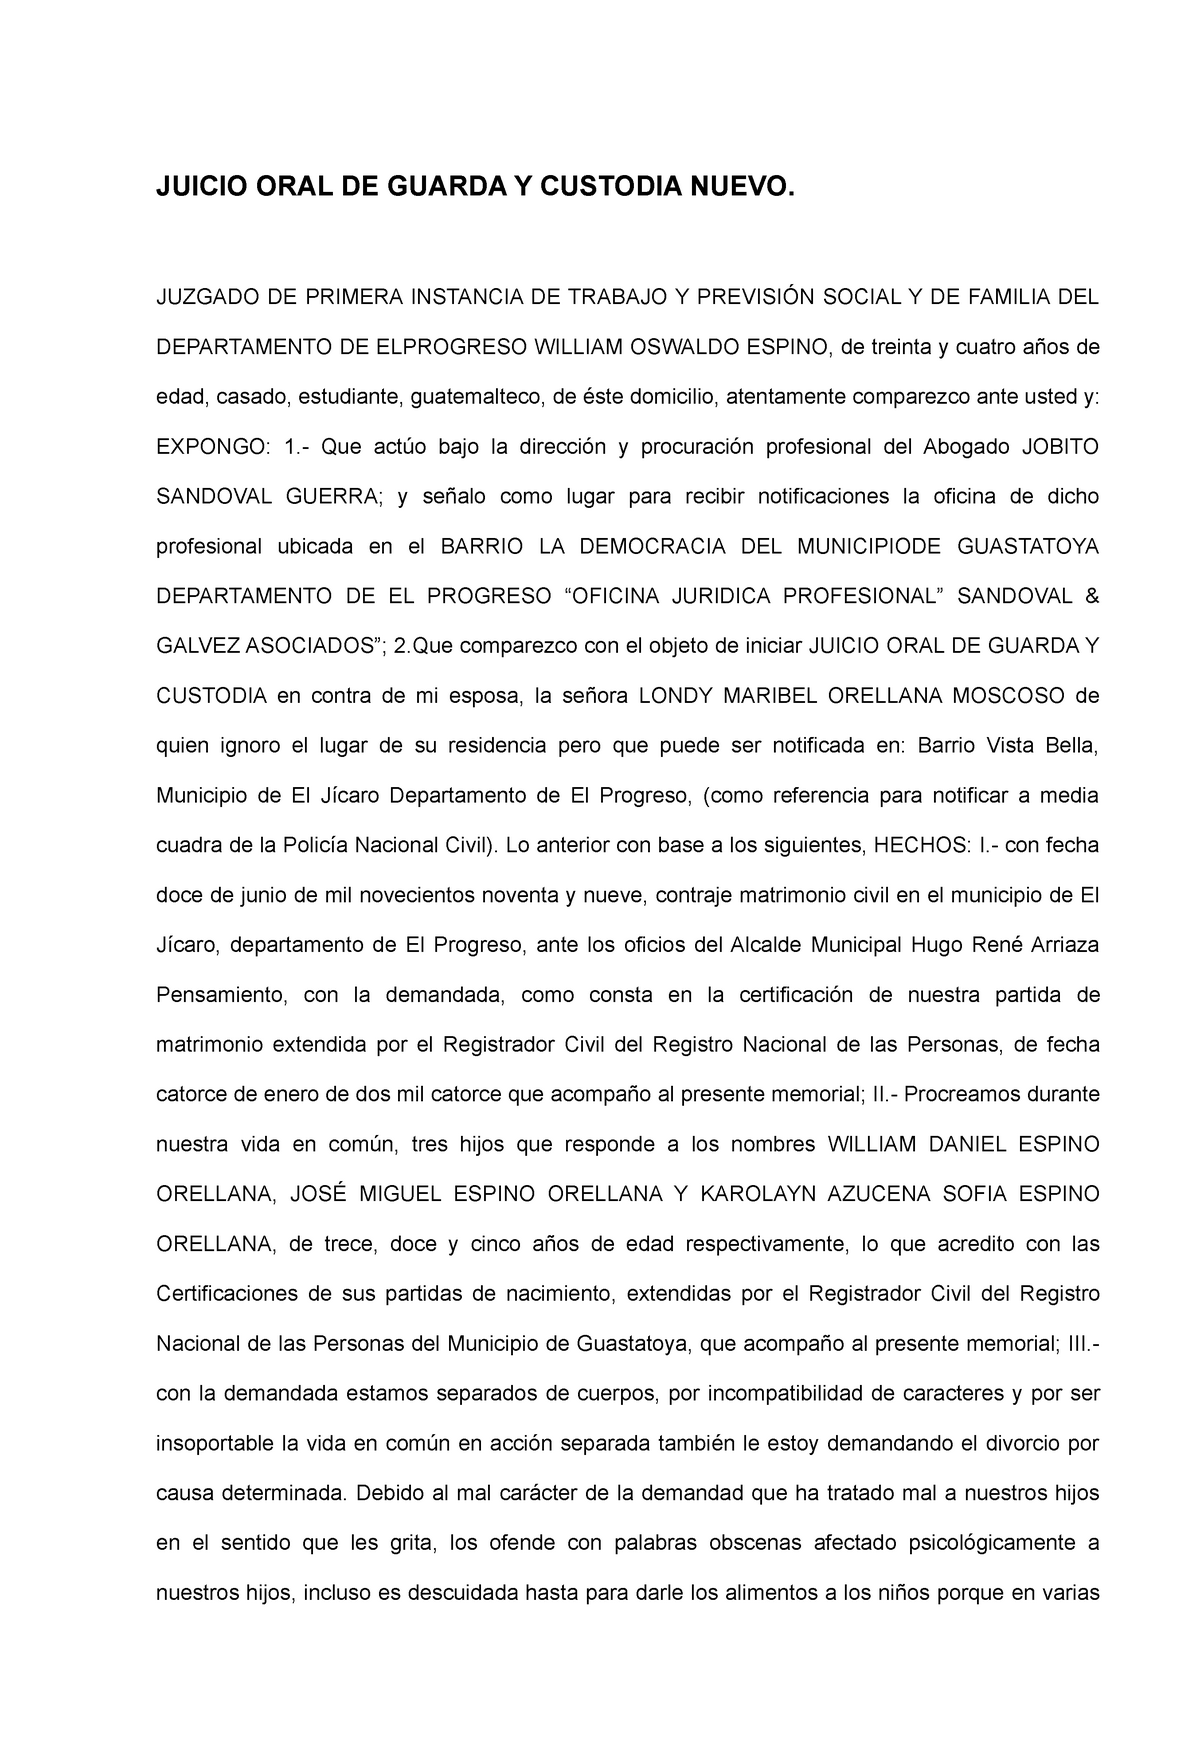 Memorial Juicio Oral De Guarda Y Custodia Nuevo Juzgado De Primera